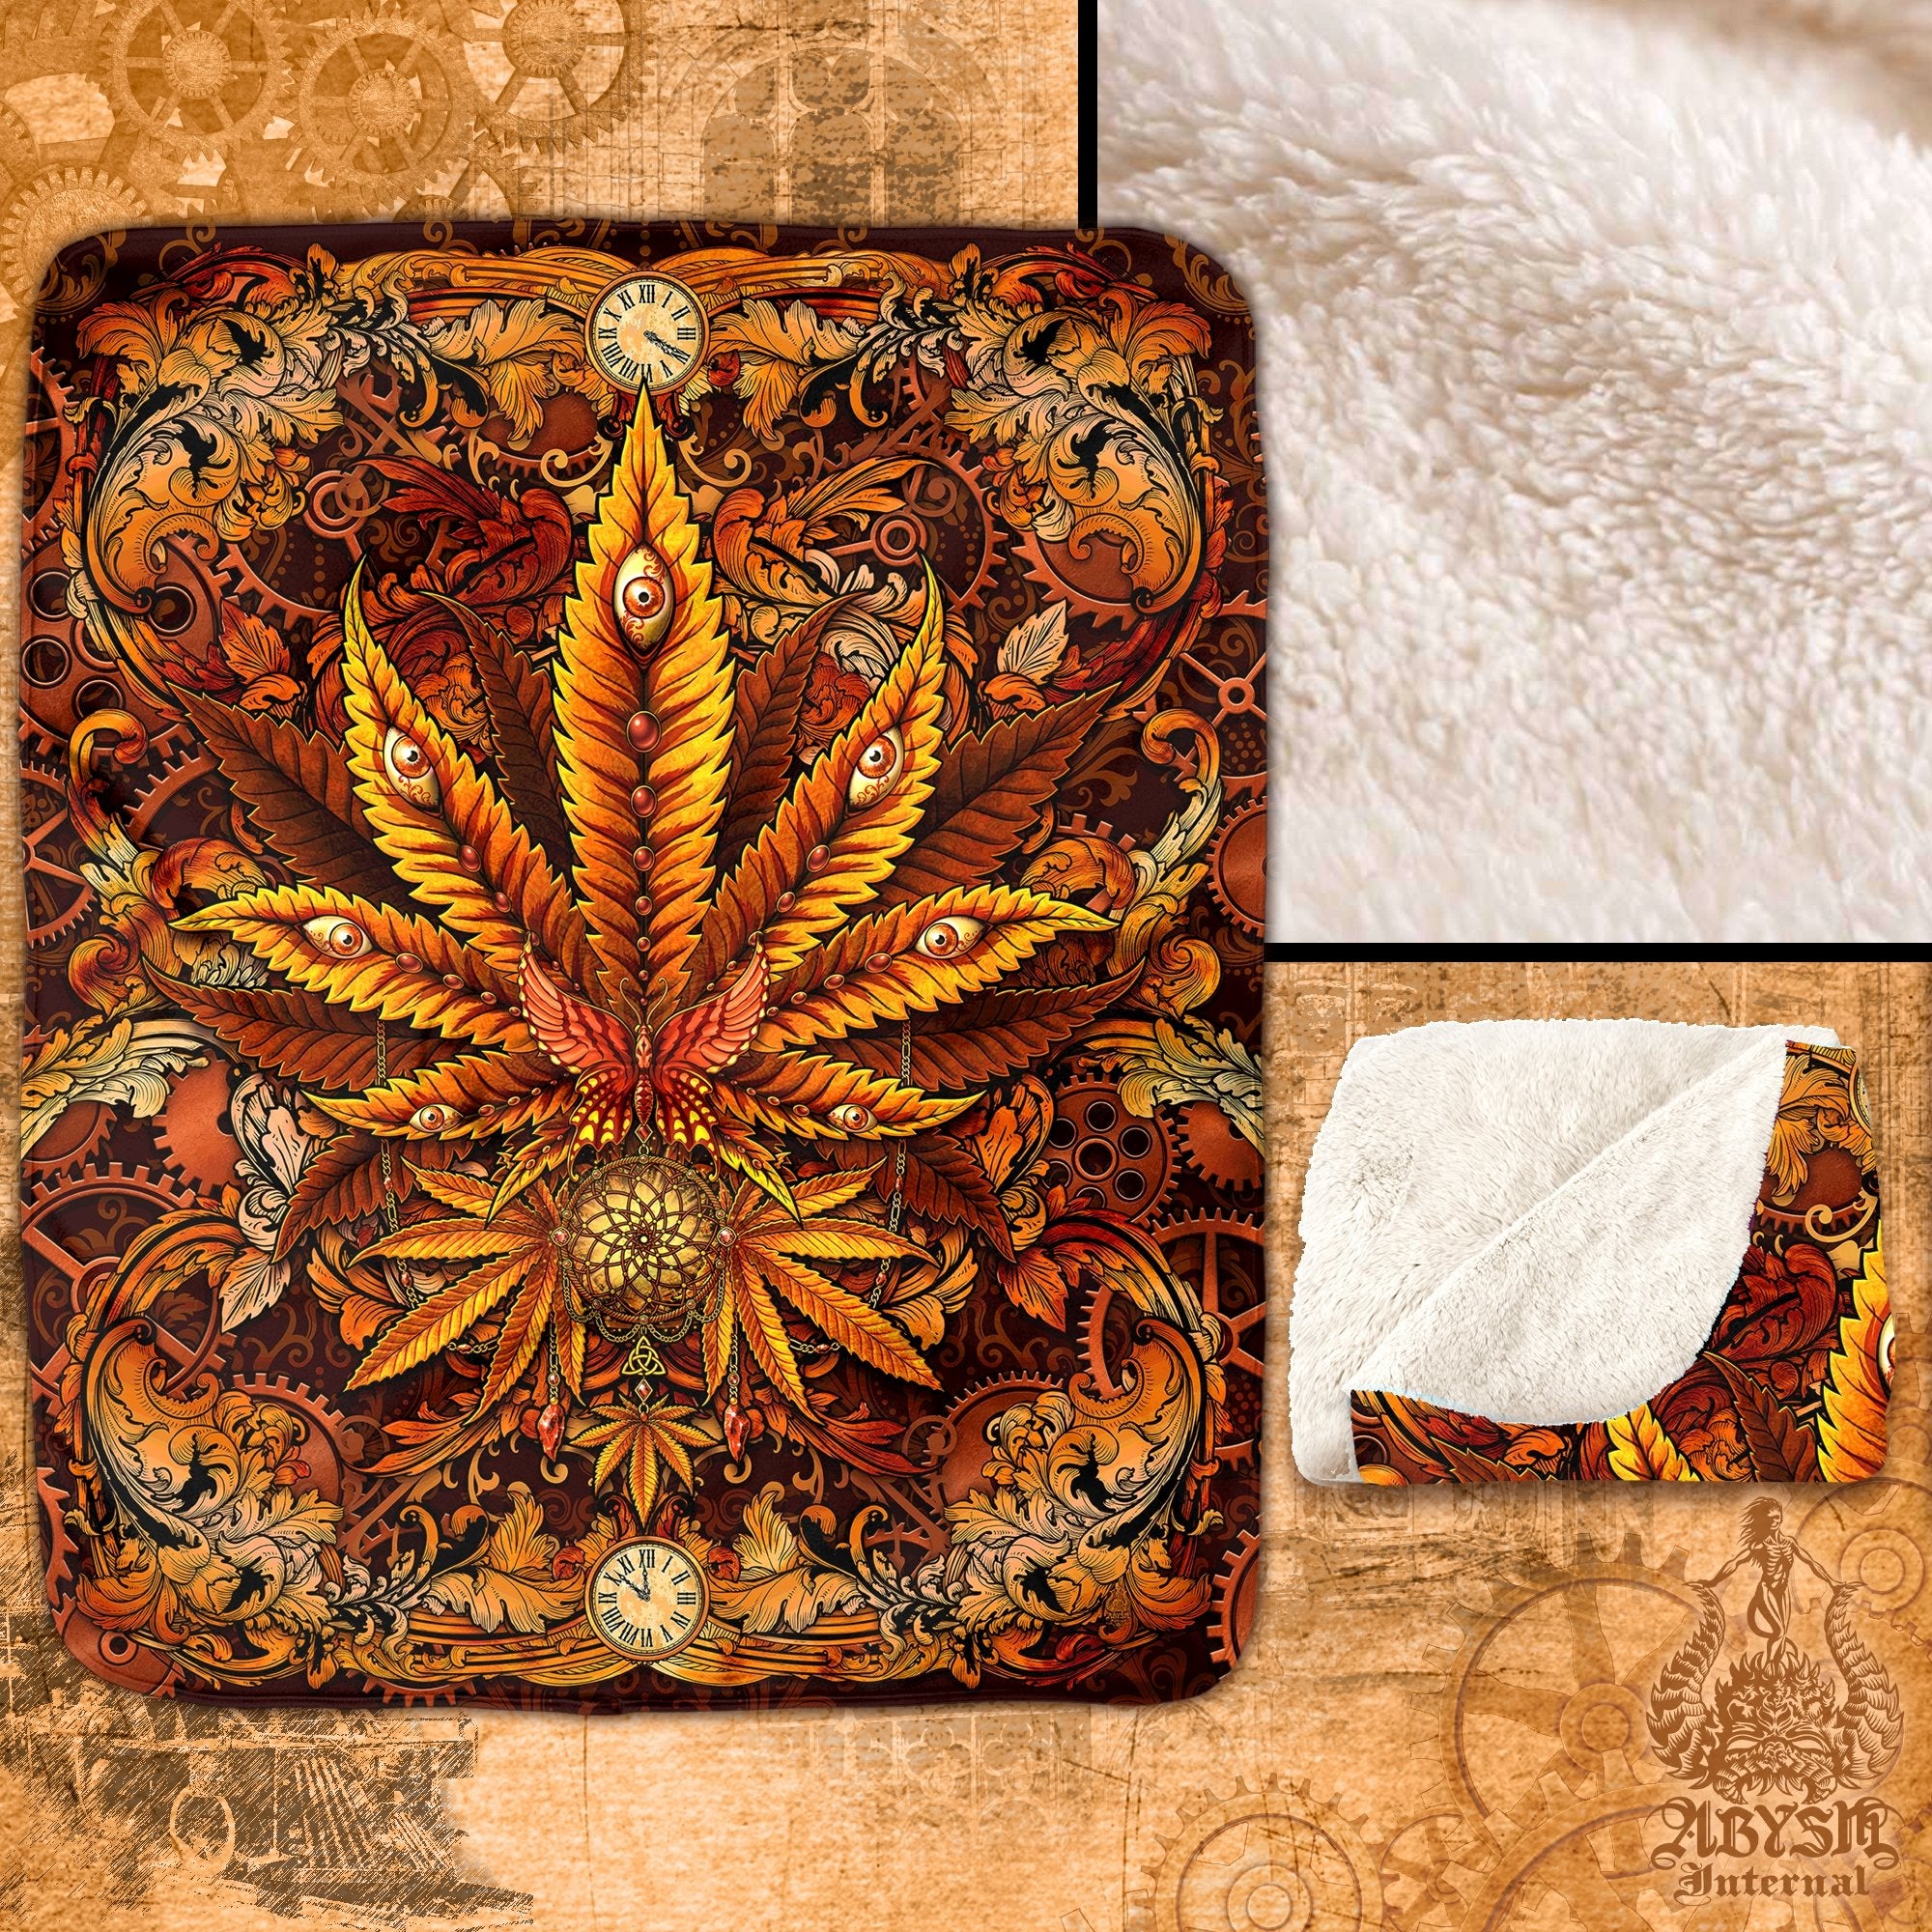 Weed Throw Fleece Blanket, Cannabis Art, Indie and Hippie Home Decor, 420 Gift - Marijuana, Steampunk - Abysm Internal